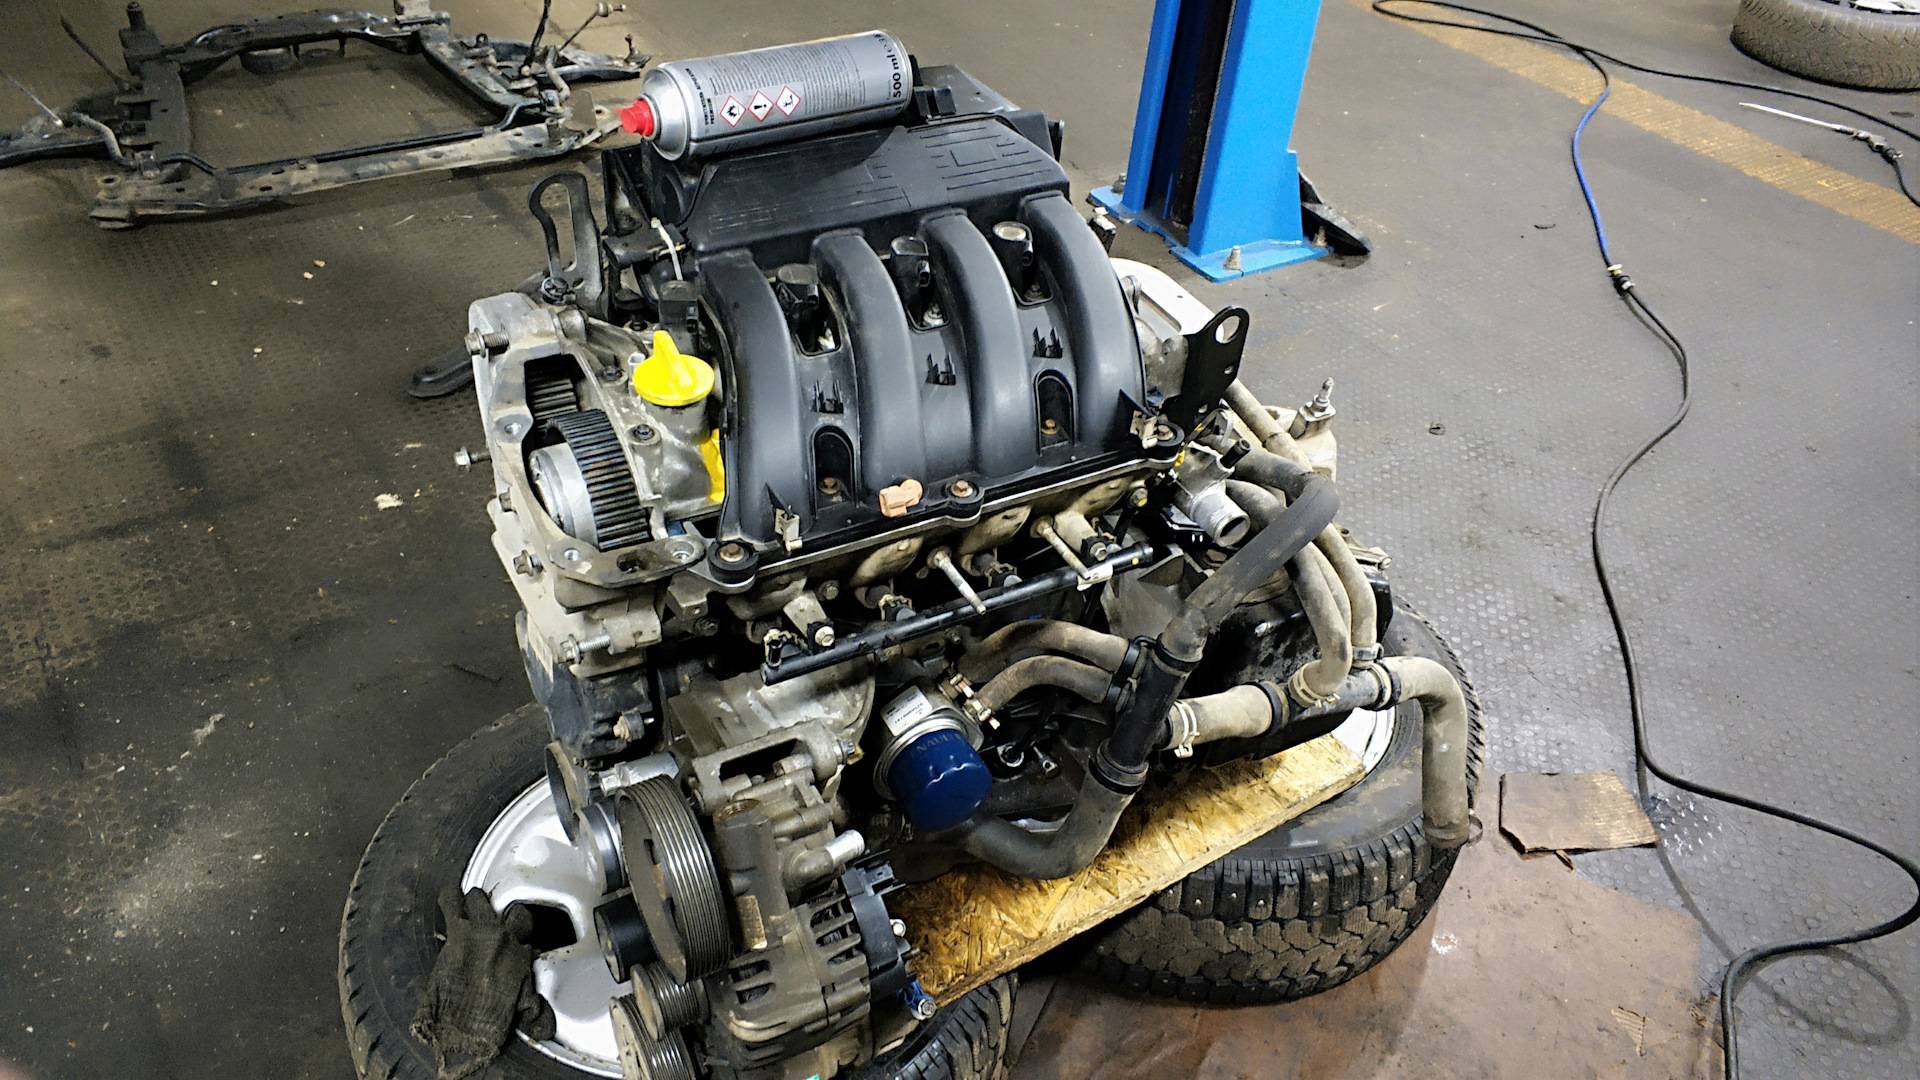 Двигатель renault f4r 2.0 технические характеристики, расход масла, ресурс, отзывы о эксплуатации и ремонте